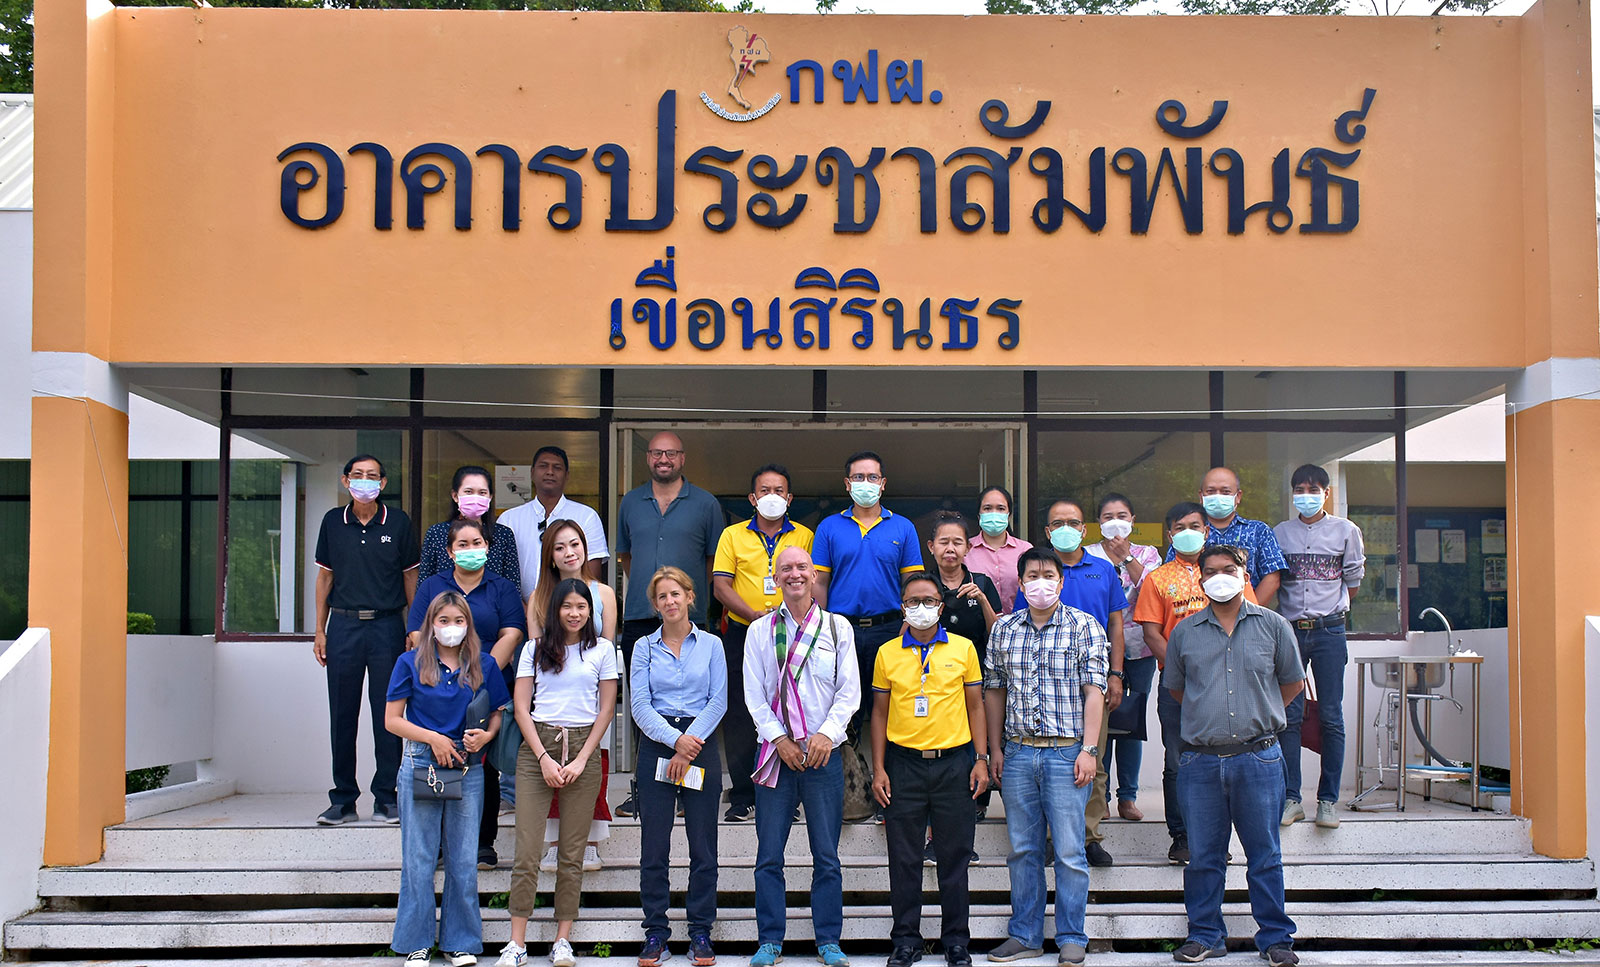 MSVC field visit team takes a group photo with a host team at EGAT Hydro Power Plant Department. (นายอาทิตย์ พรคุณา วิศวกรระดับ 10 ผู้ช่วยหัวหน้ากองโรงไฟฟ้าเขื่อนสิริธรต้อนรับคณะทำงานโครงการ MSVC Thailand ที่มาศึกษาดูงานโครงการโซลาร์เซลล์ลอยน้ำไฮบริดเขื่อนสิรินธร แหล่งต้นน้ำการทำการเกษตร พร้อมถ่ายรูปร่วมกันเป็นที่ระลึก)